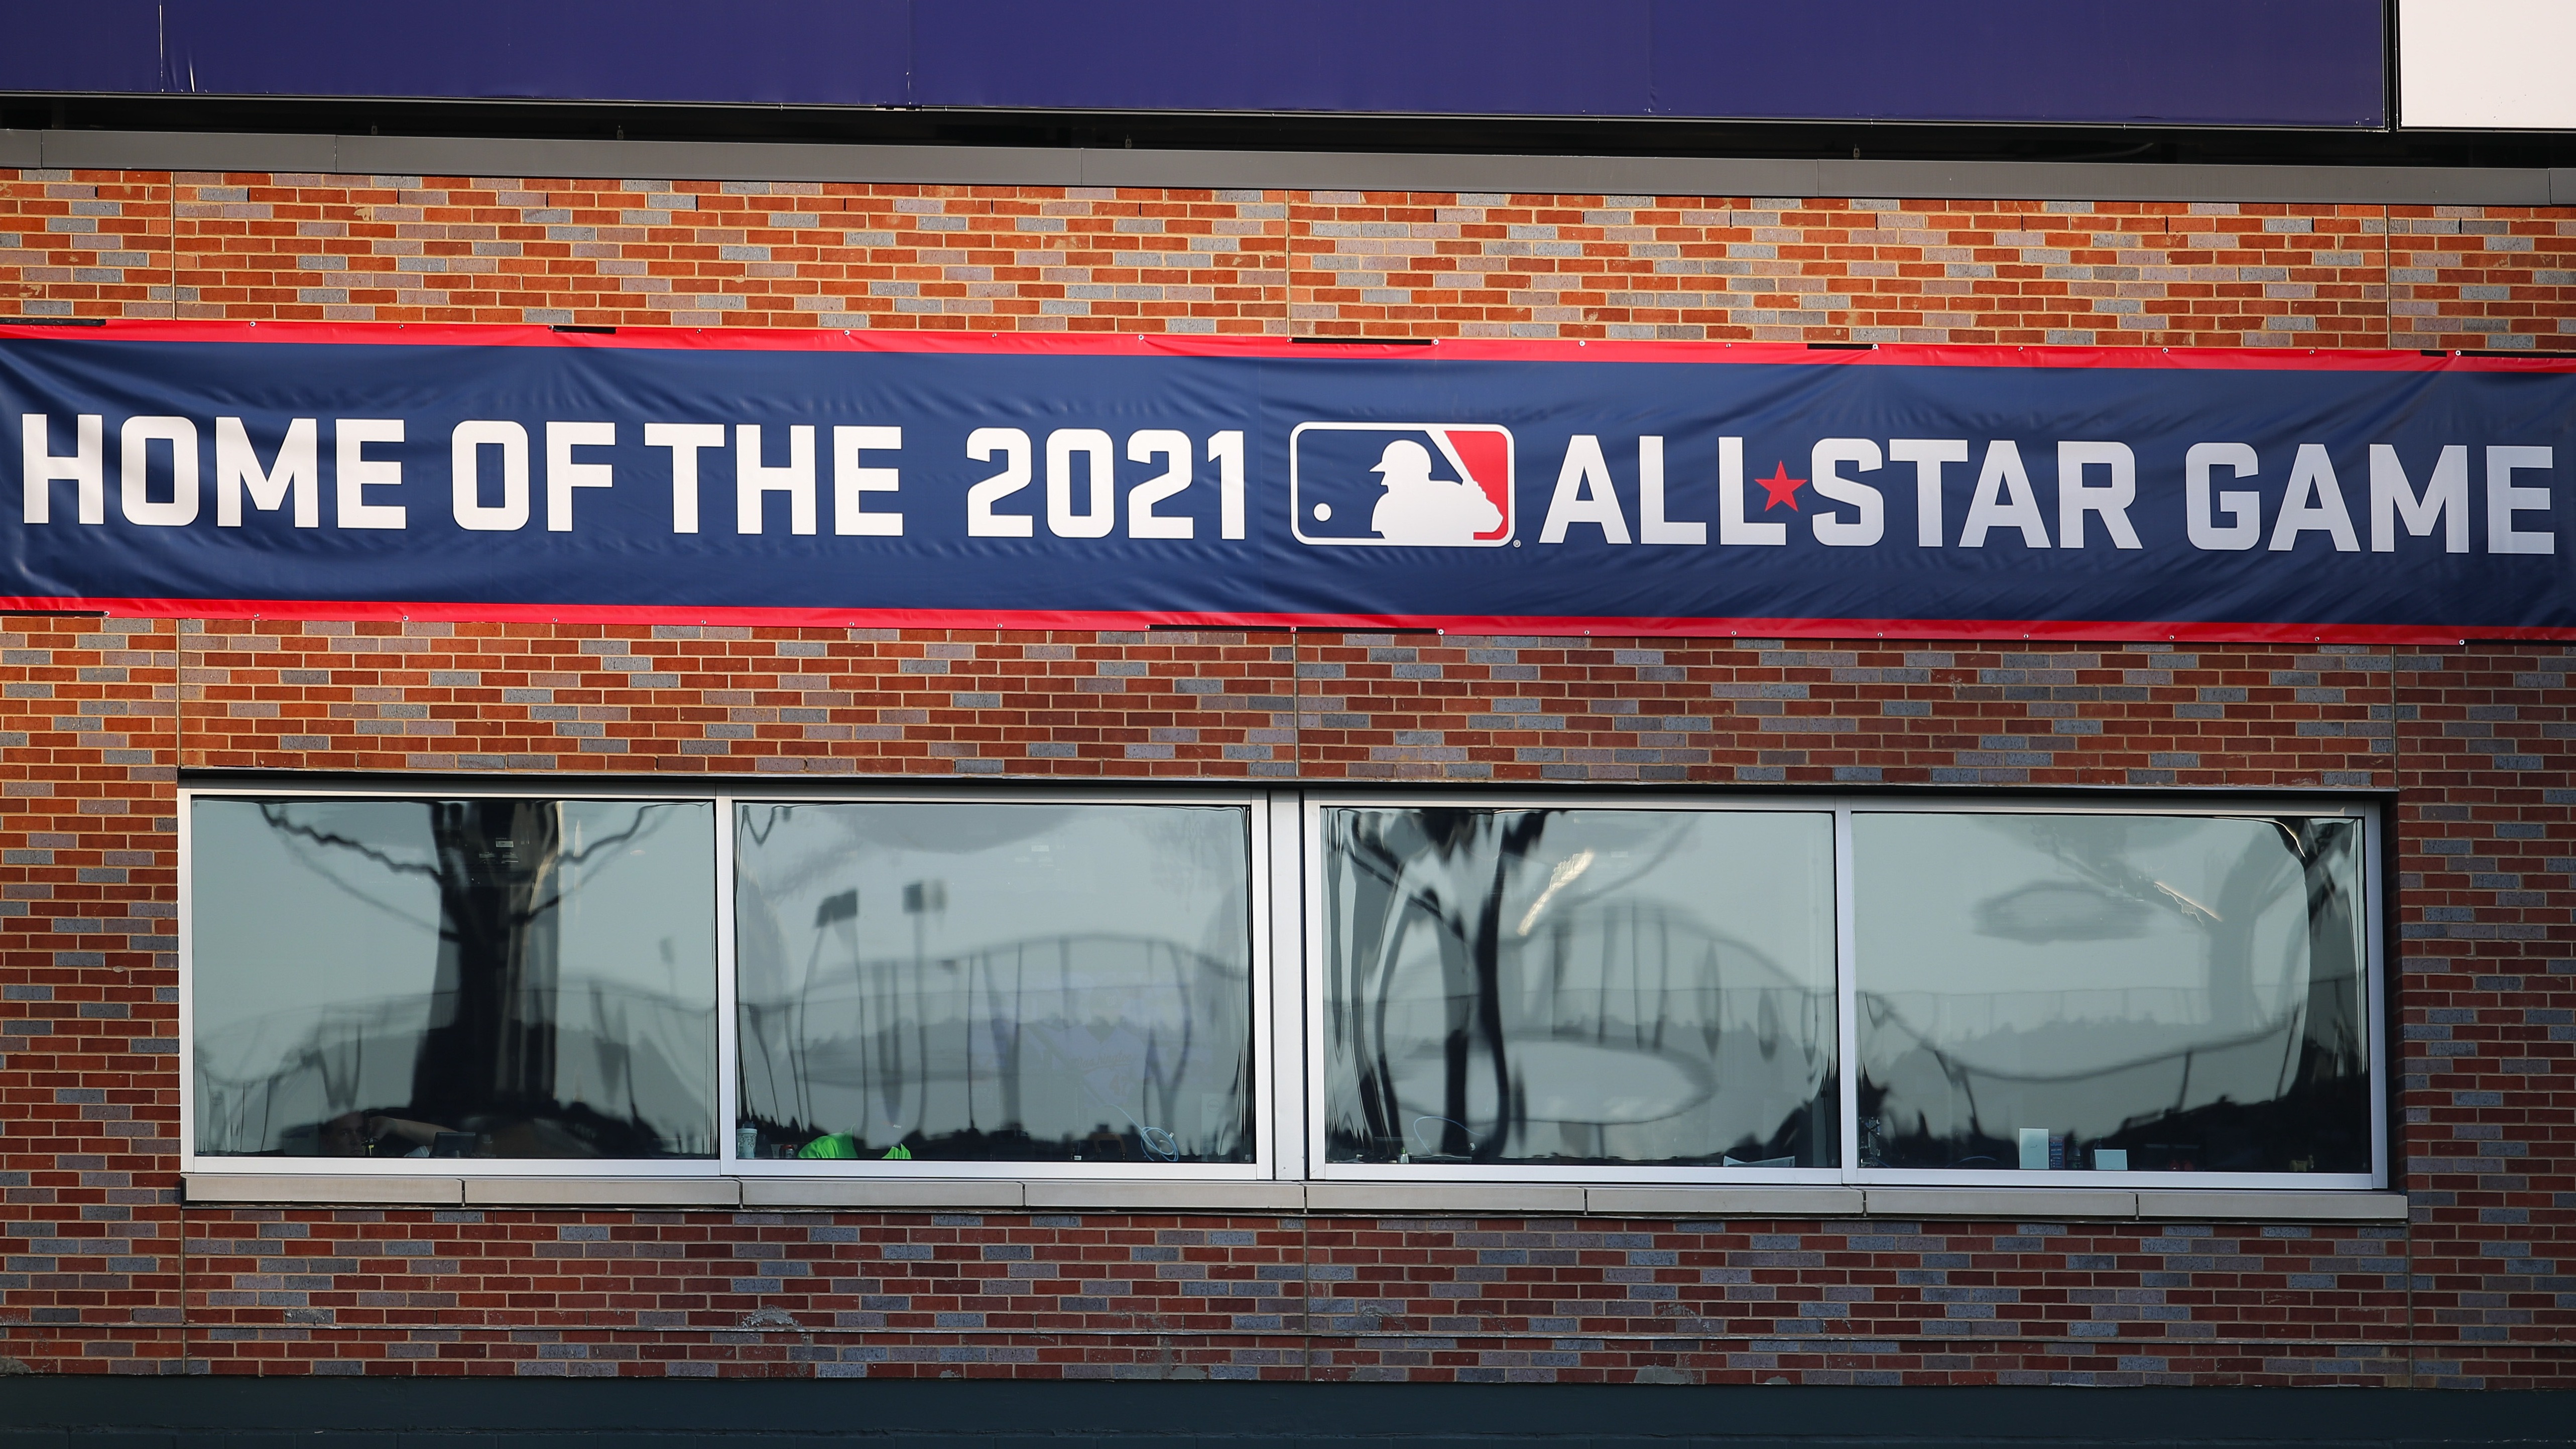 Major League Baseball banner